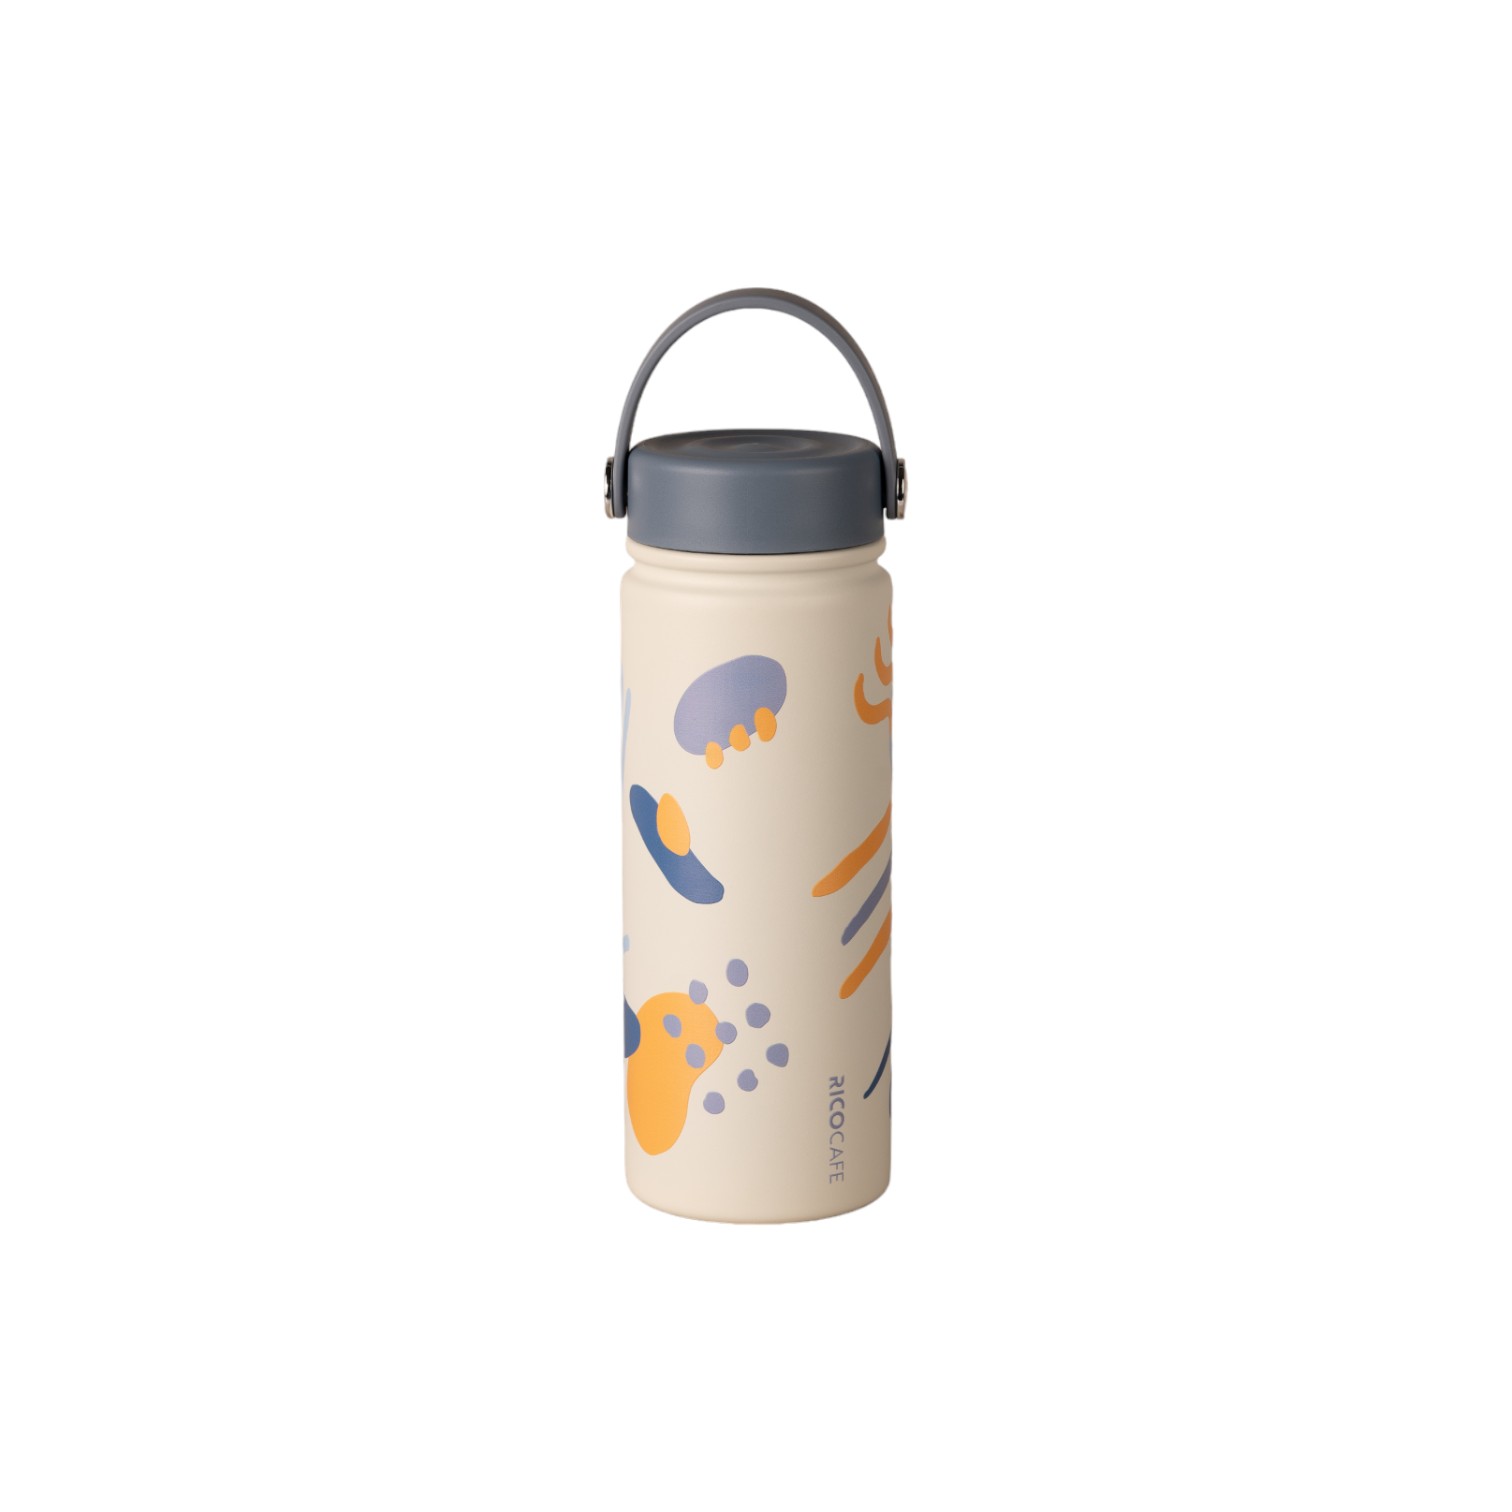 Floral Series Carry Ceramic Coating Stainless Steel Vacuum Coffee Mug 